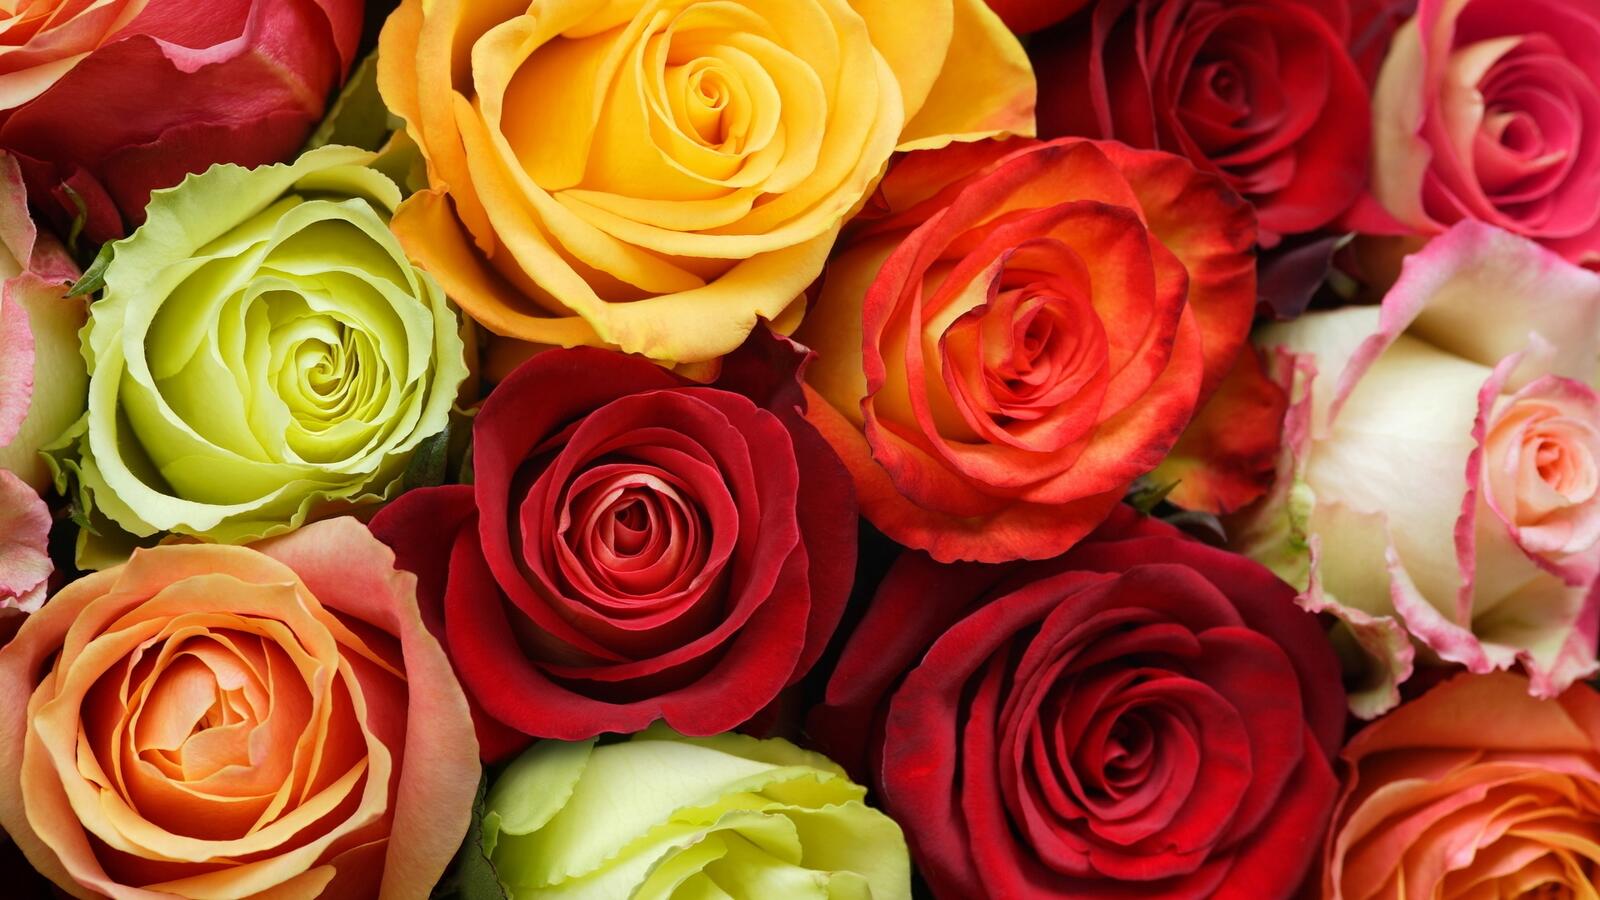 Обои роза смешанный много роз на рабочий стол